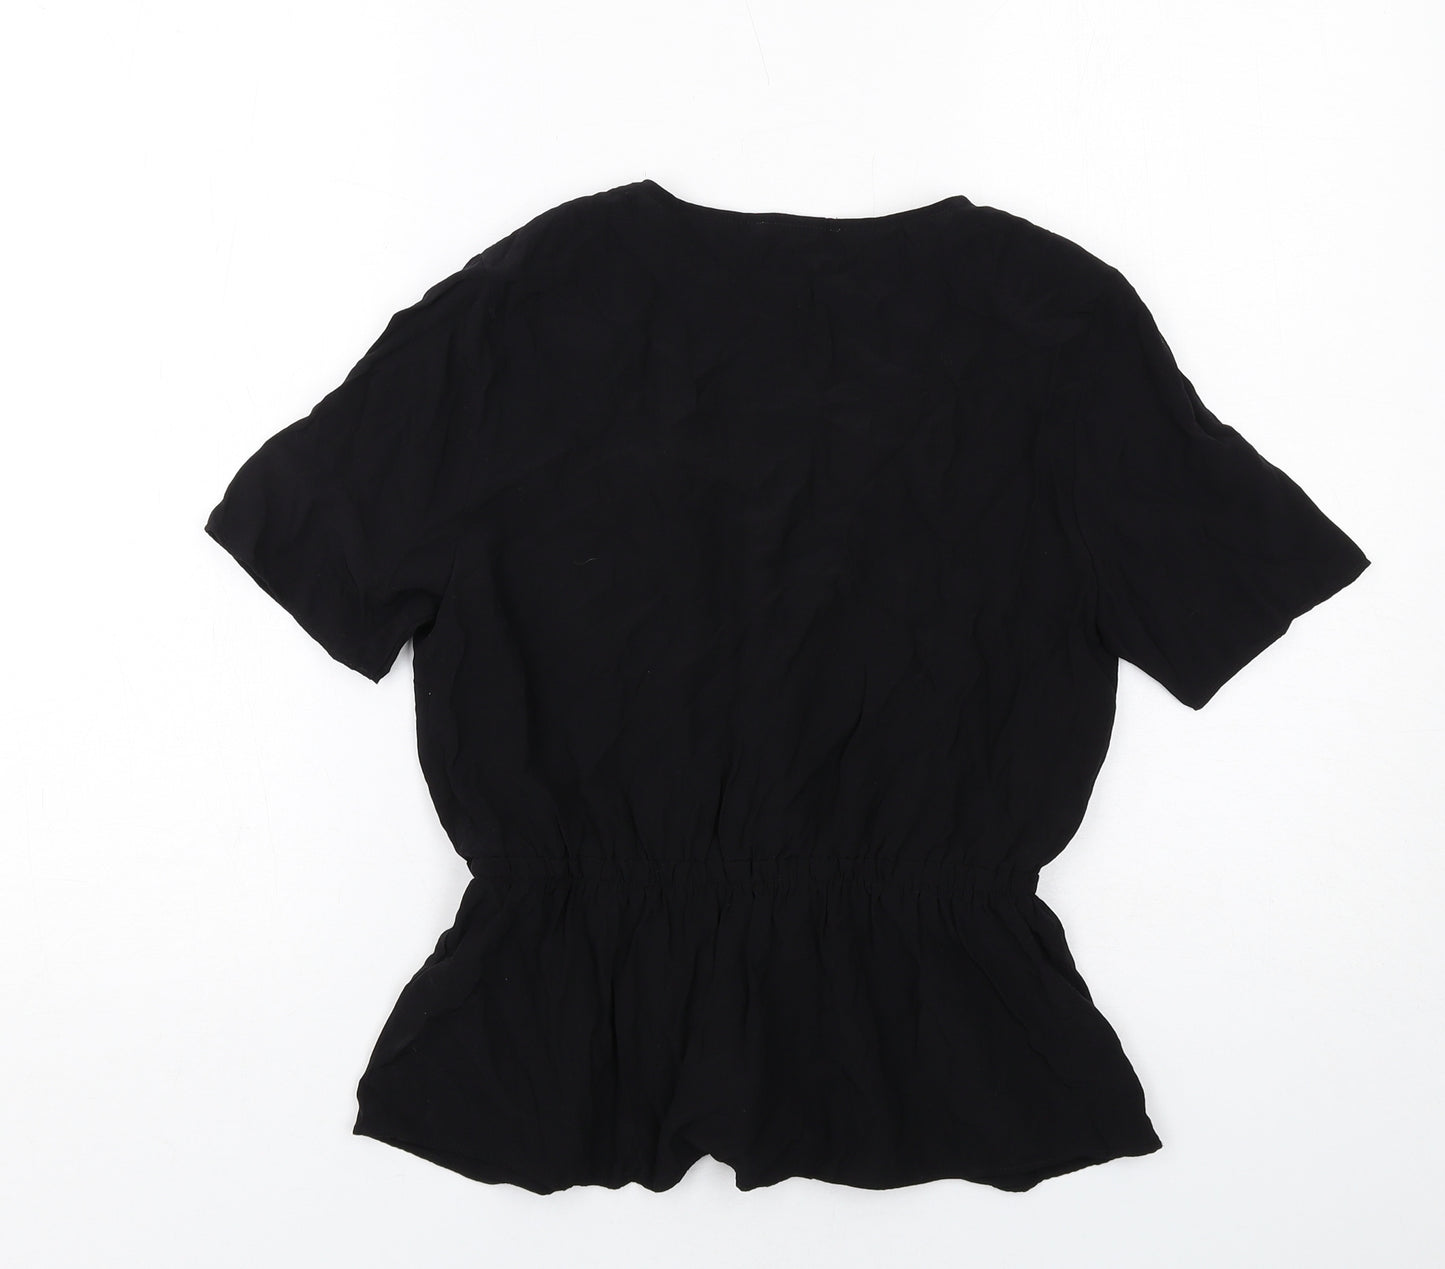 Warehouse Womens Black Viscose Basic Blouse Size 8 V-Neck